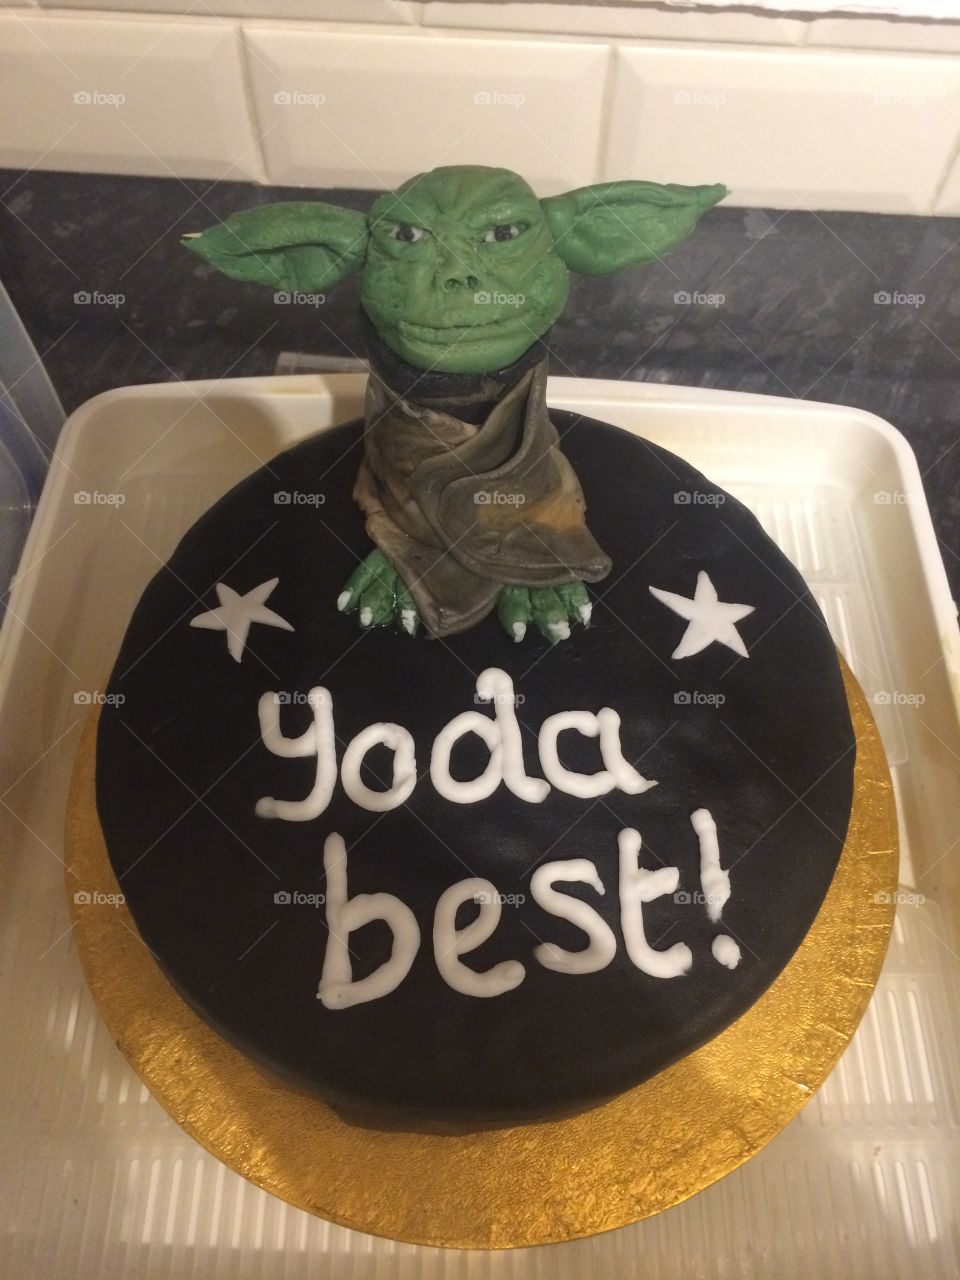 Yoda best birthday cake Yoda icing model